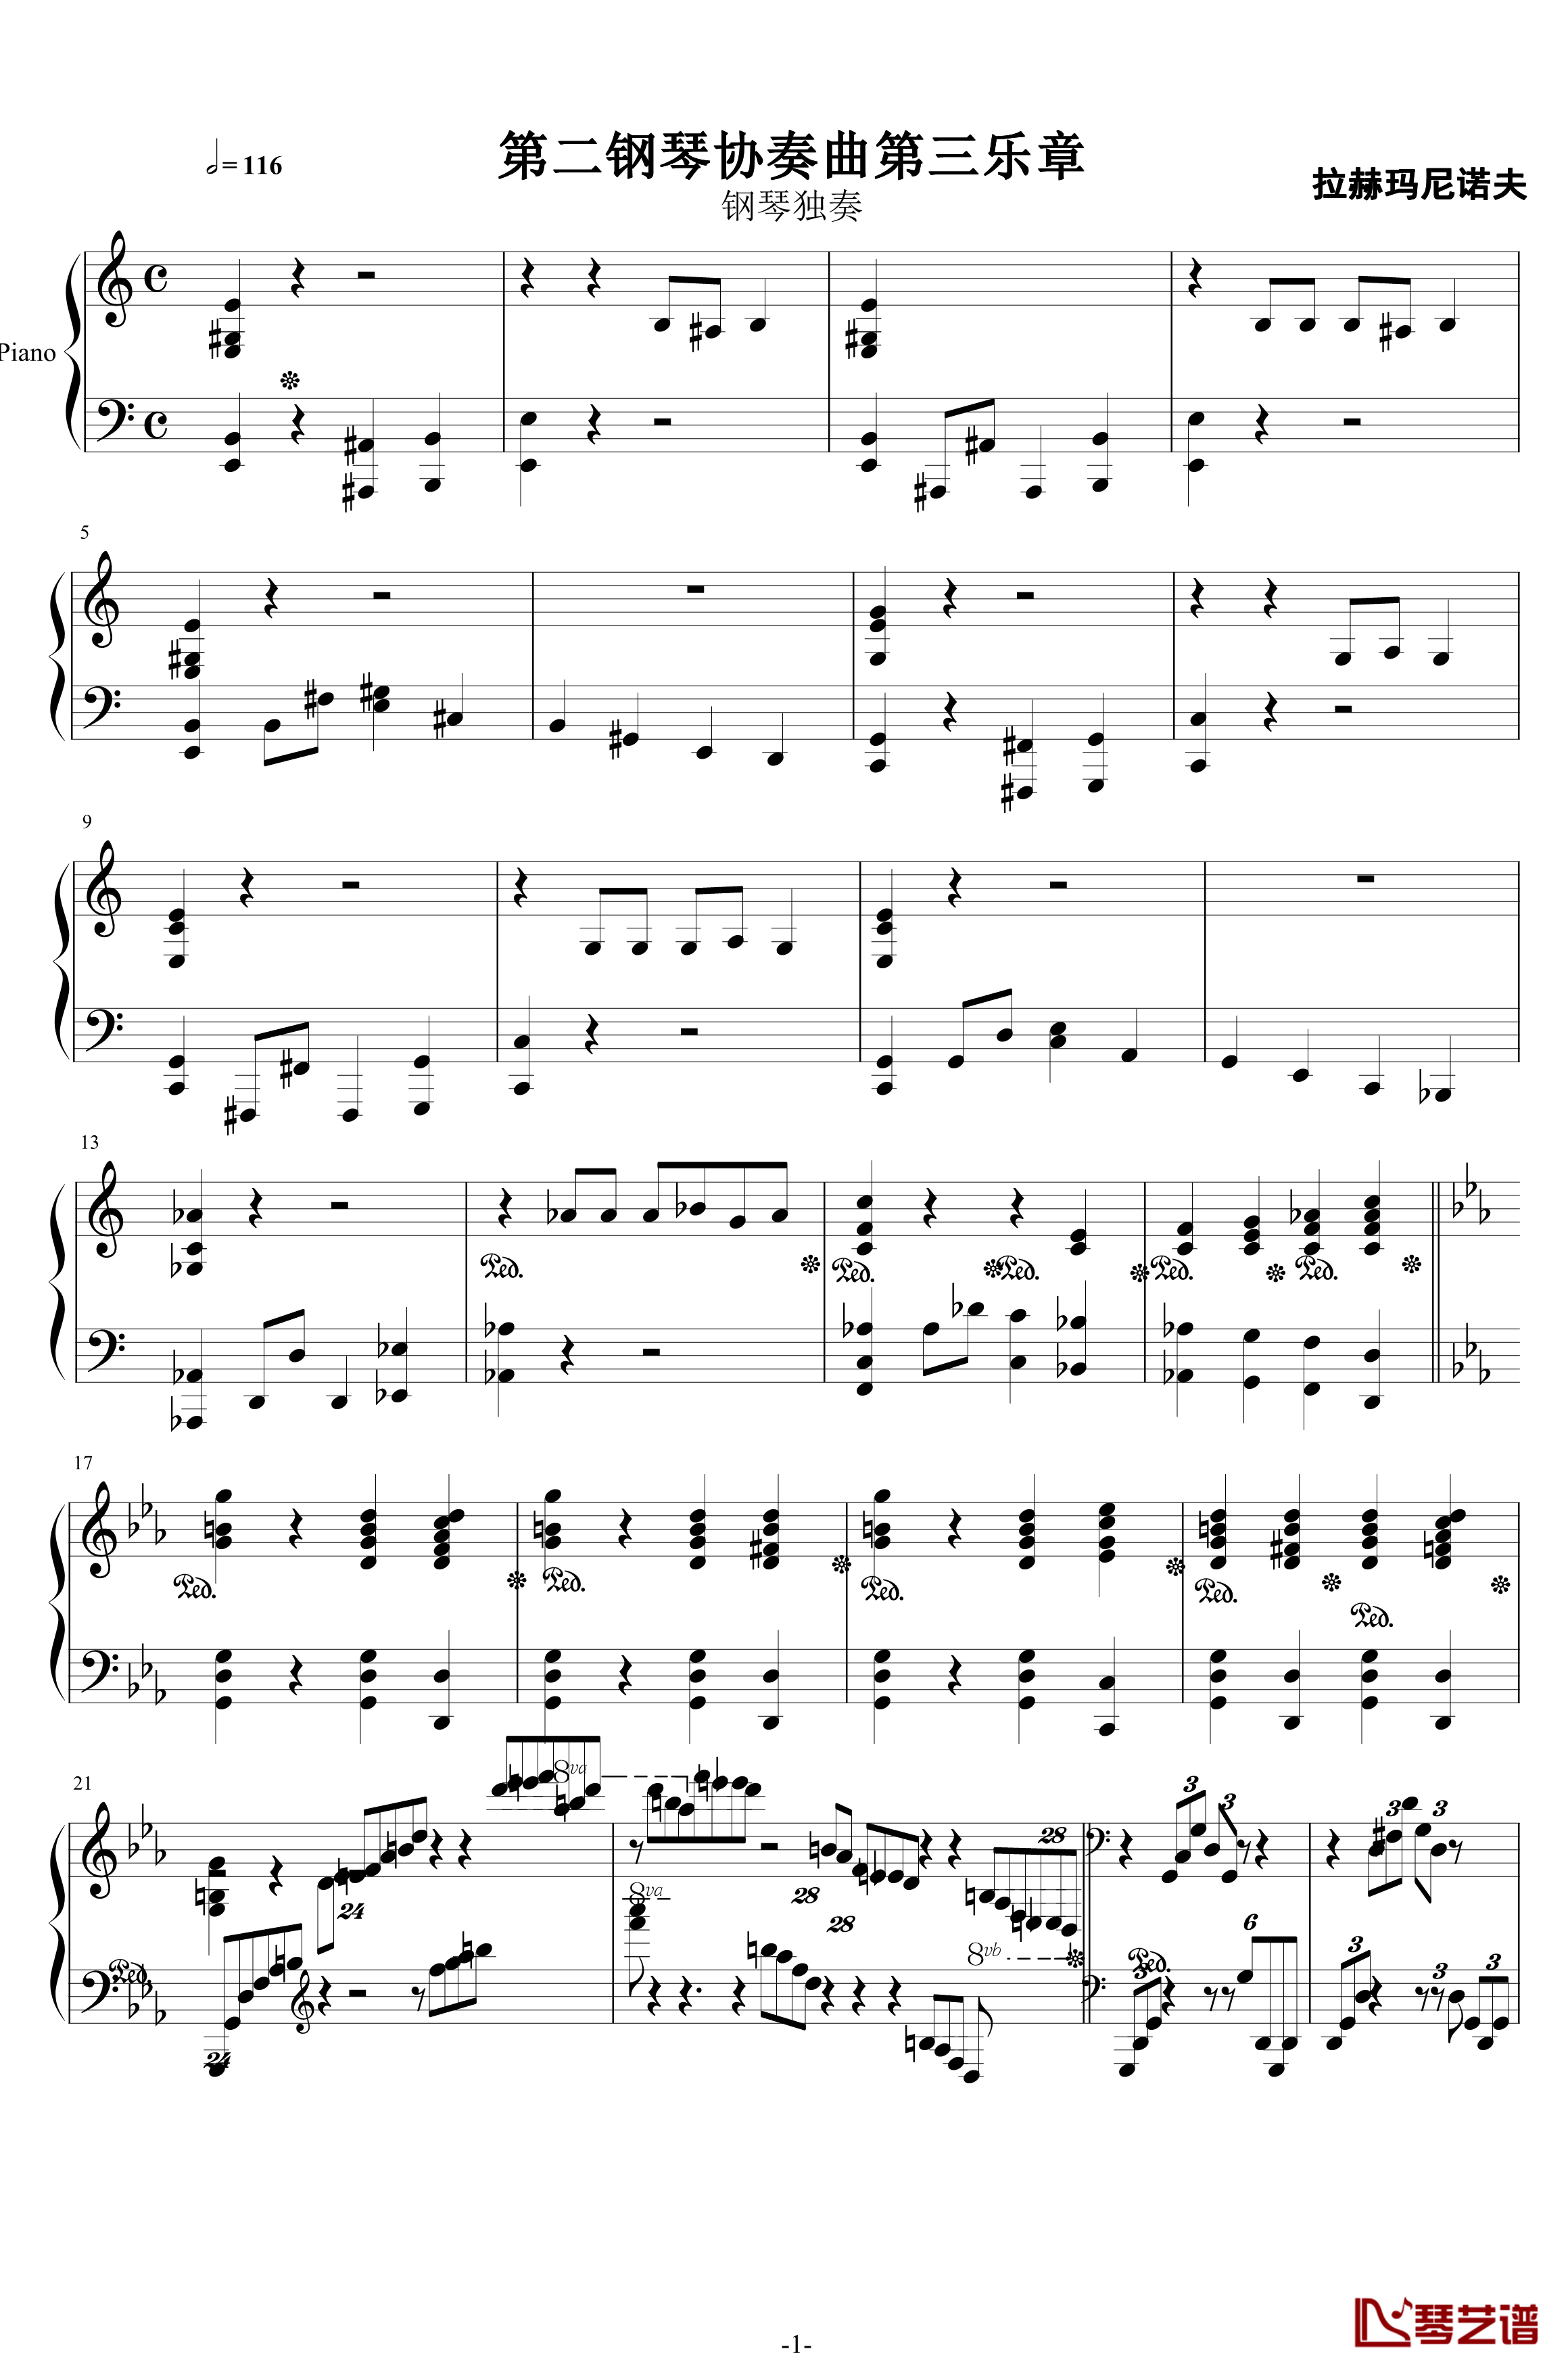 第二钢琴协奏曲钢琴谱-第三乐章独奏版-c小调-拉赫马尼若夫1